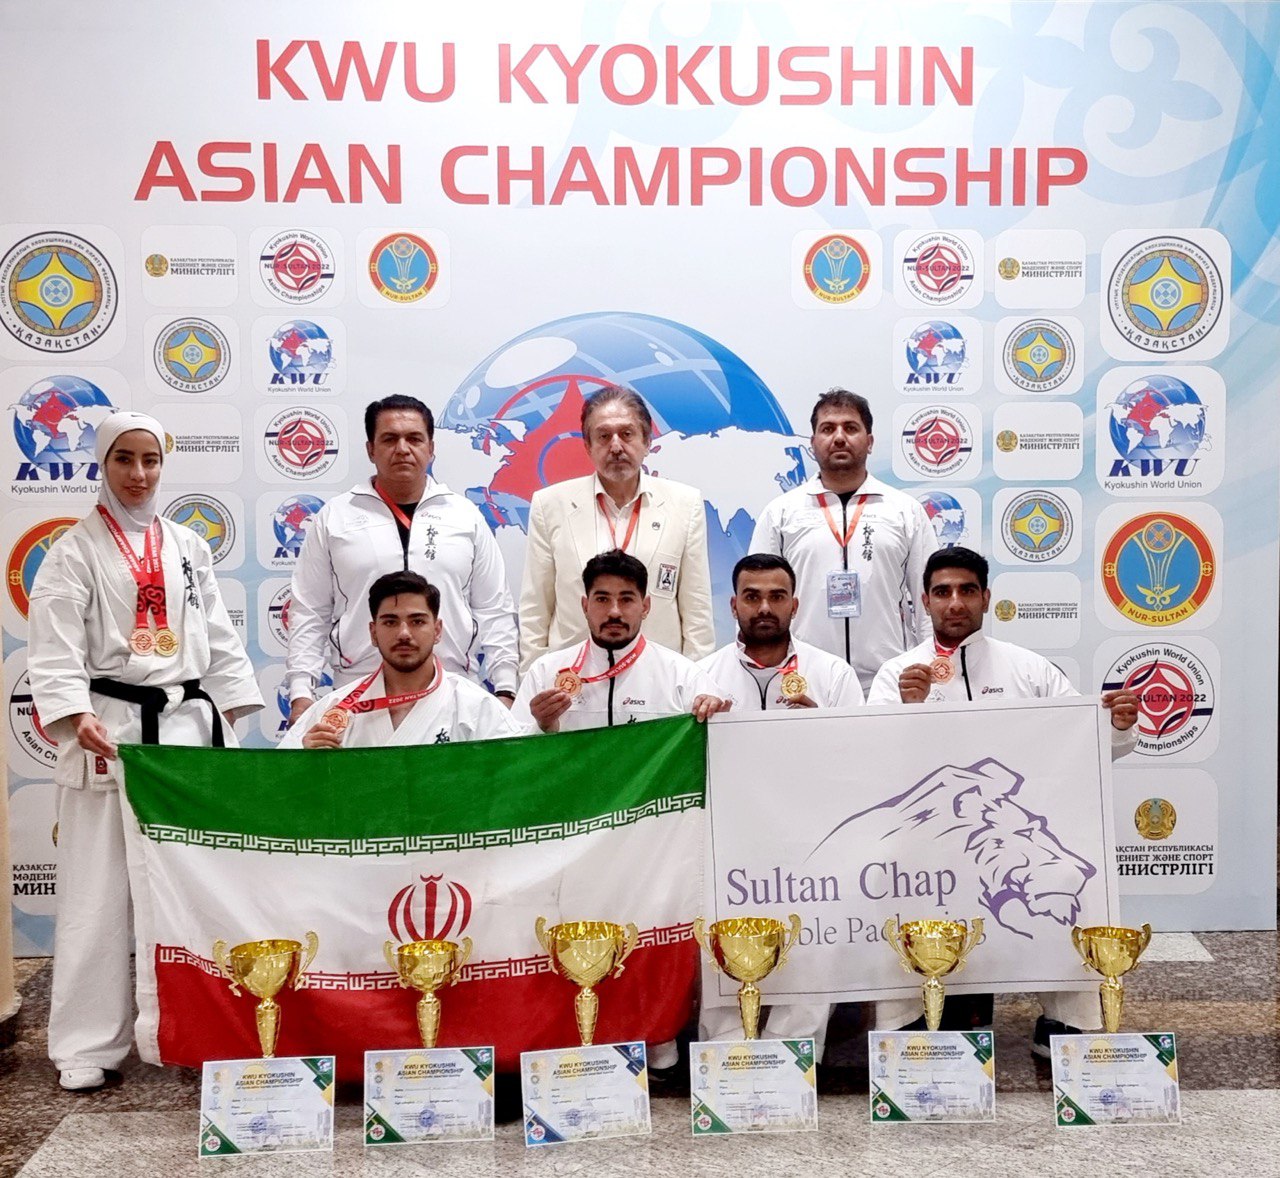 مسابقات آسیایی قزاقستان؛ تیم کیوکوشین کان کاراته ایران نایب قهرمان شد